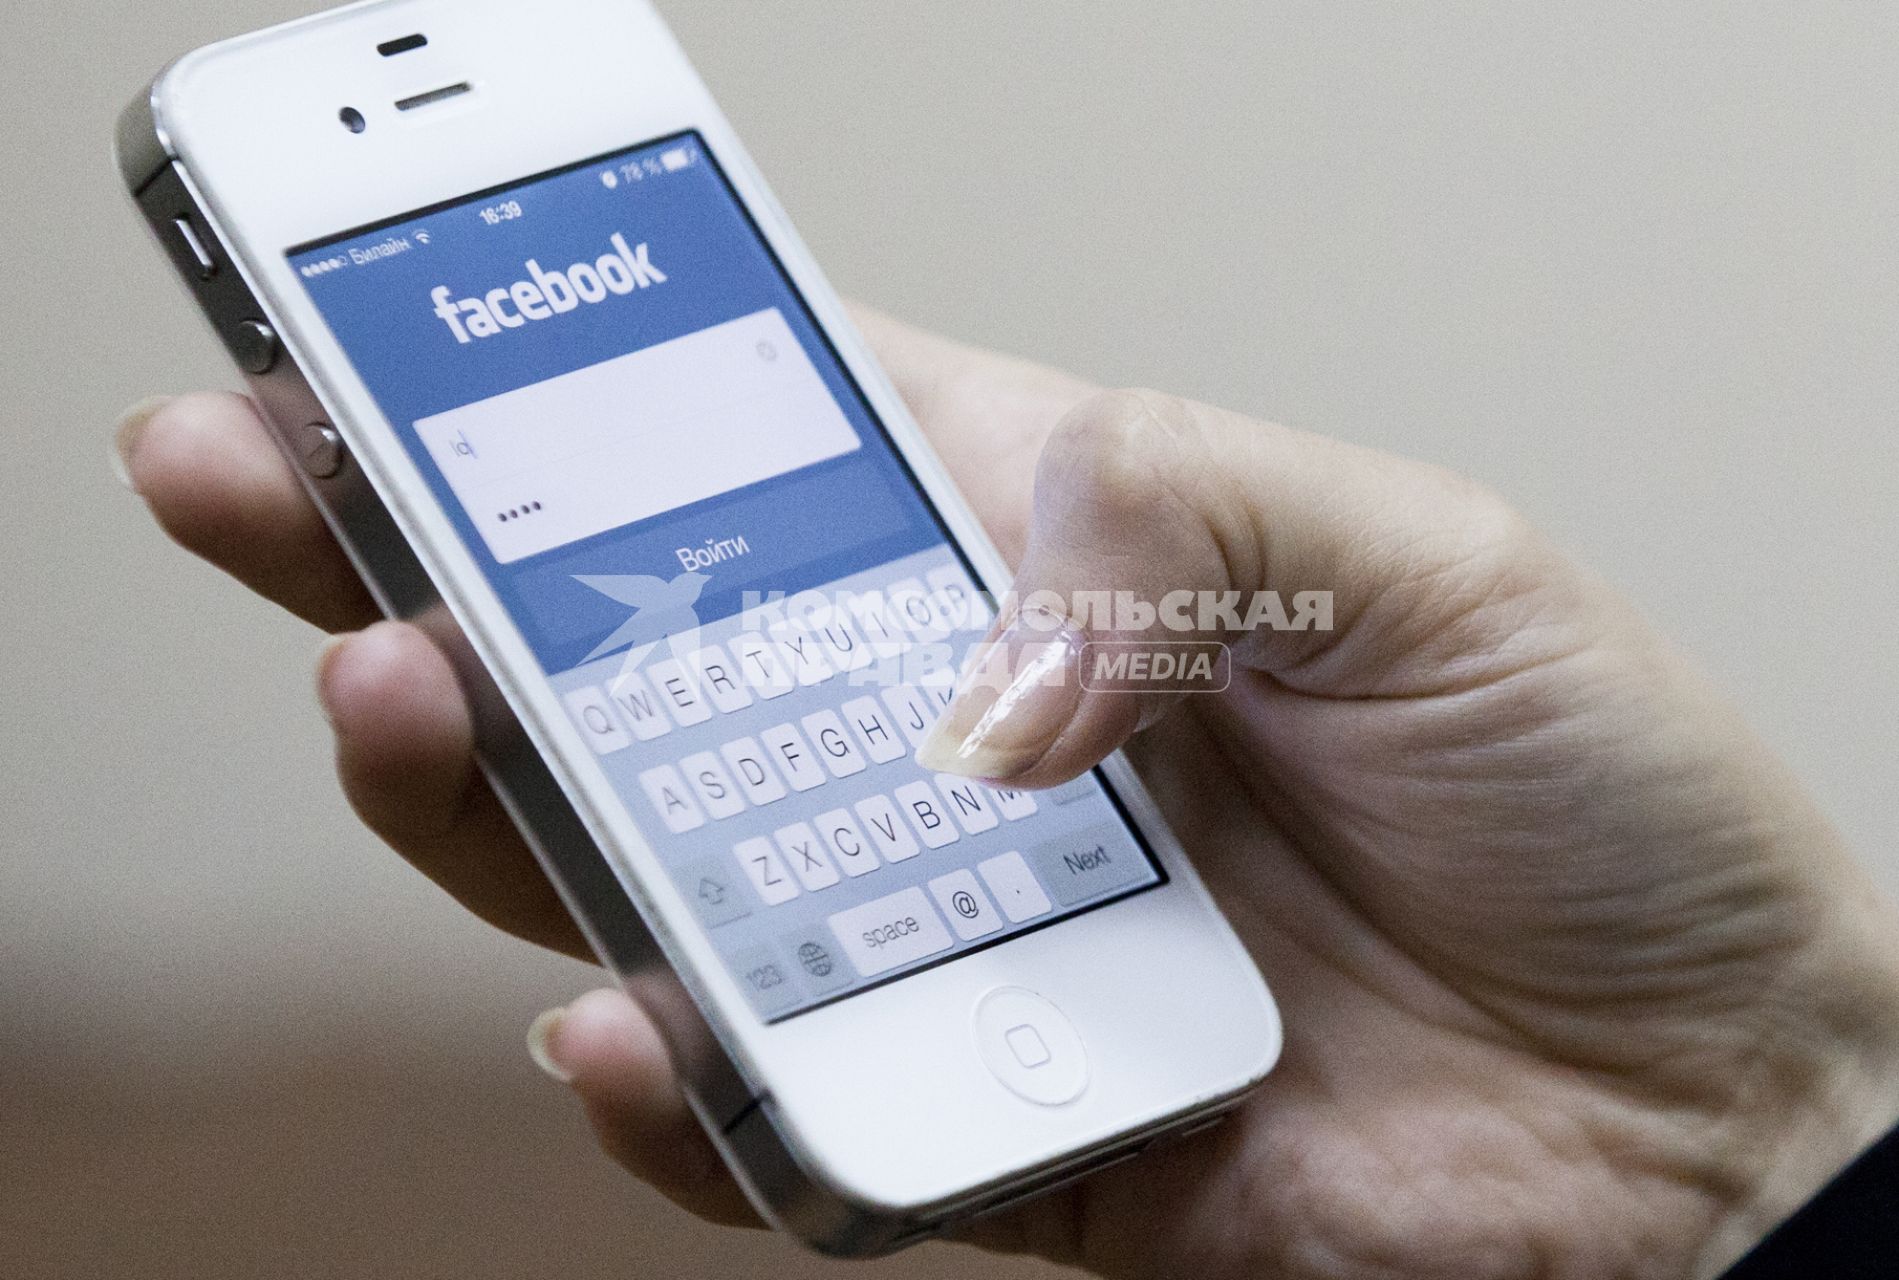 Человек использует мобильное устройство для входа в социальную сеть facebook.